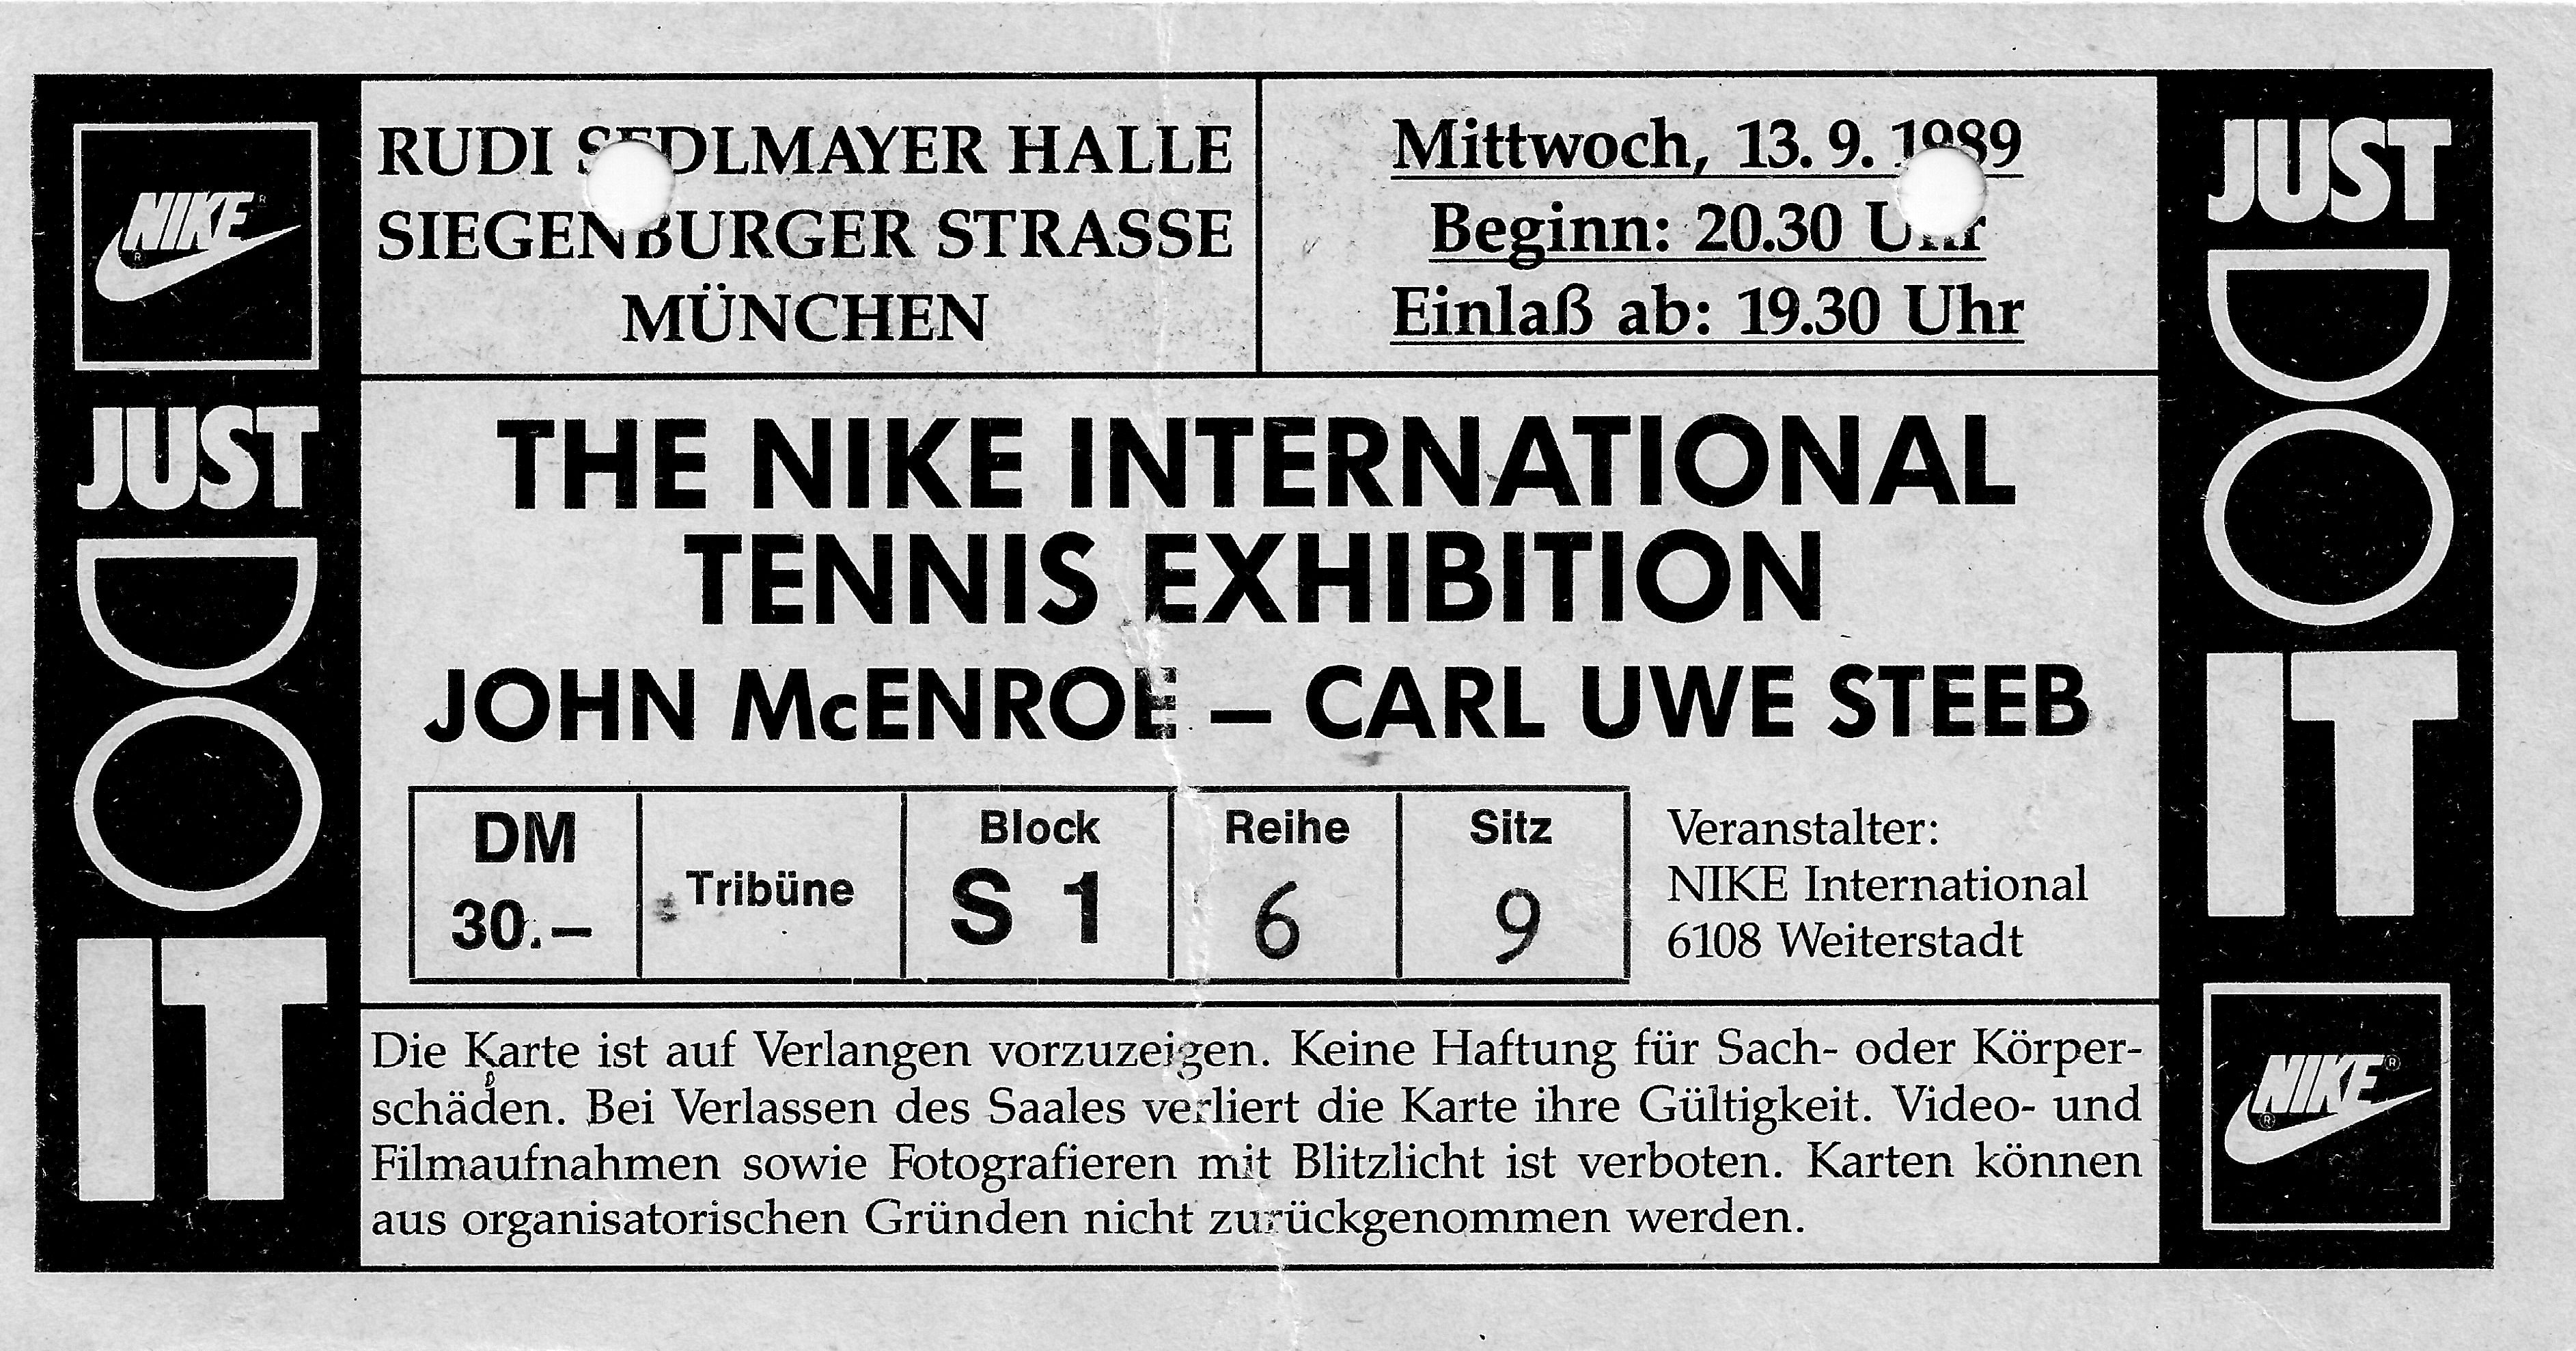 Onderhoudbaar Gepensioneerde boete File:The Nike International Tennis Exhibition - John McEnroe-Carl Uwe Steeb  - Rudi Sedlmayer Halle München, 1989.jpg - Wikimedia Commons